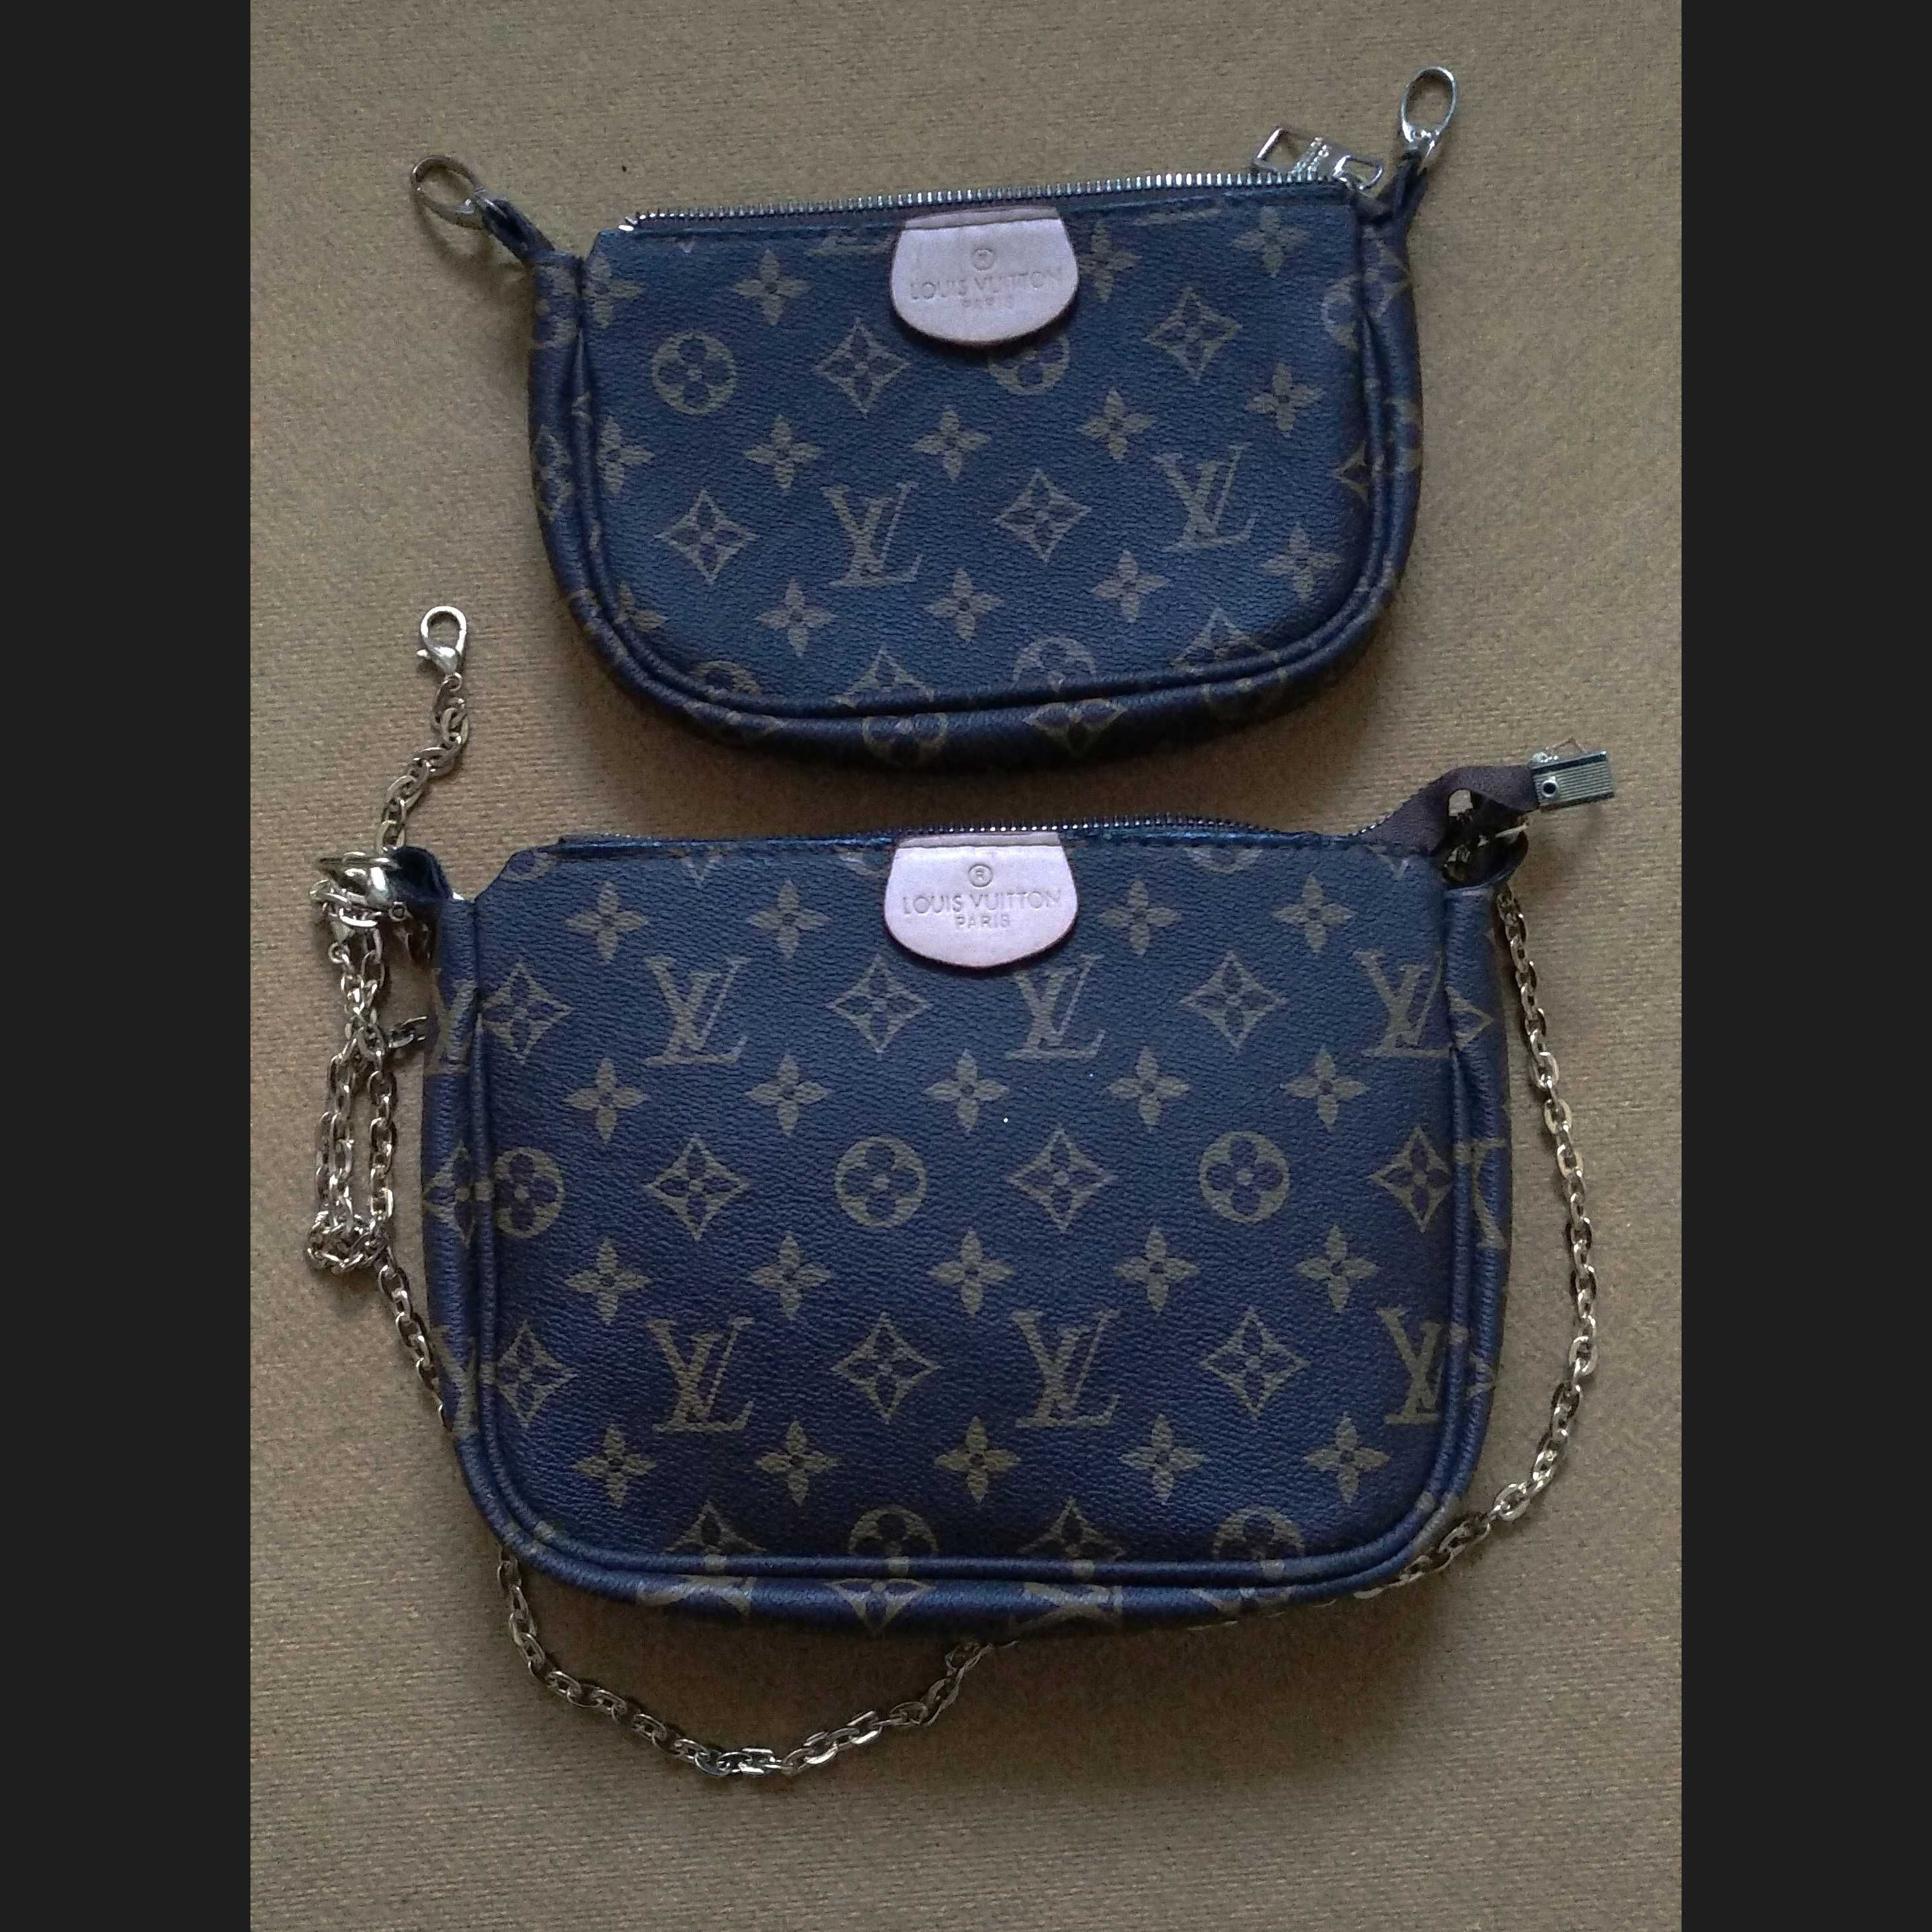 Продам якісну сумку яка виглядає як Louis Vuitton